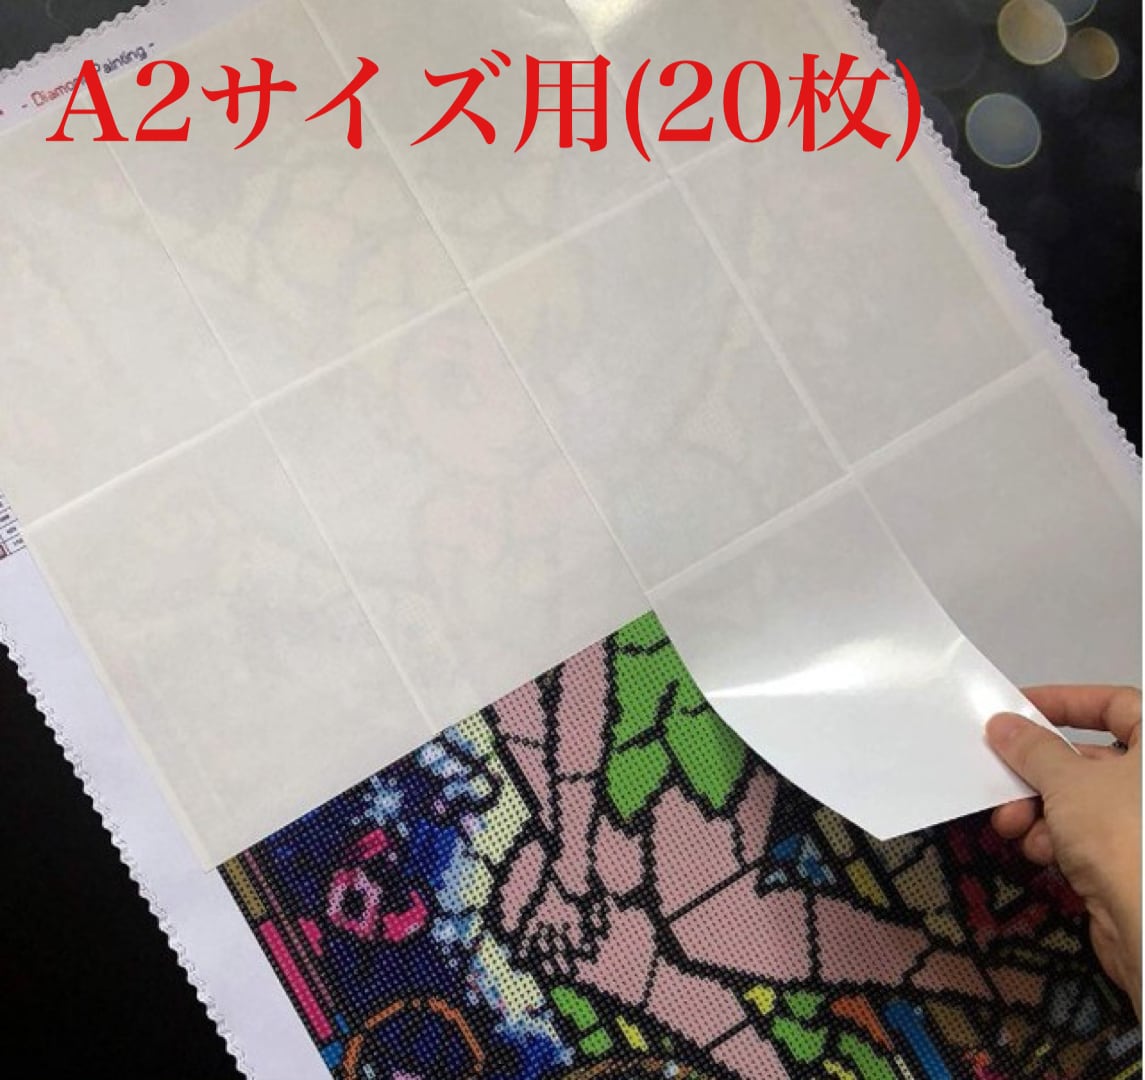 再入荷‼️A2サイズ【剥離紙 20枚セット】ダイヤモンドアート